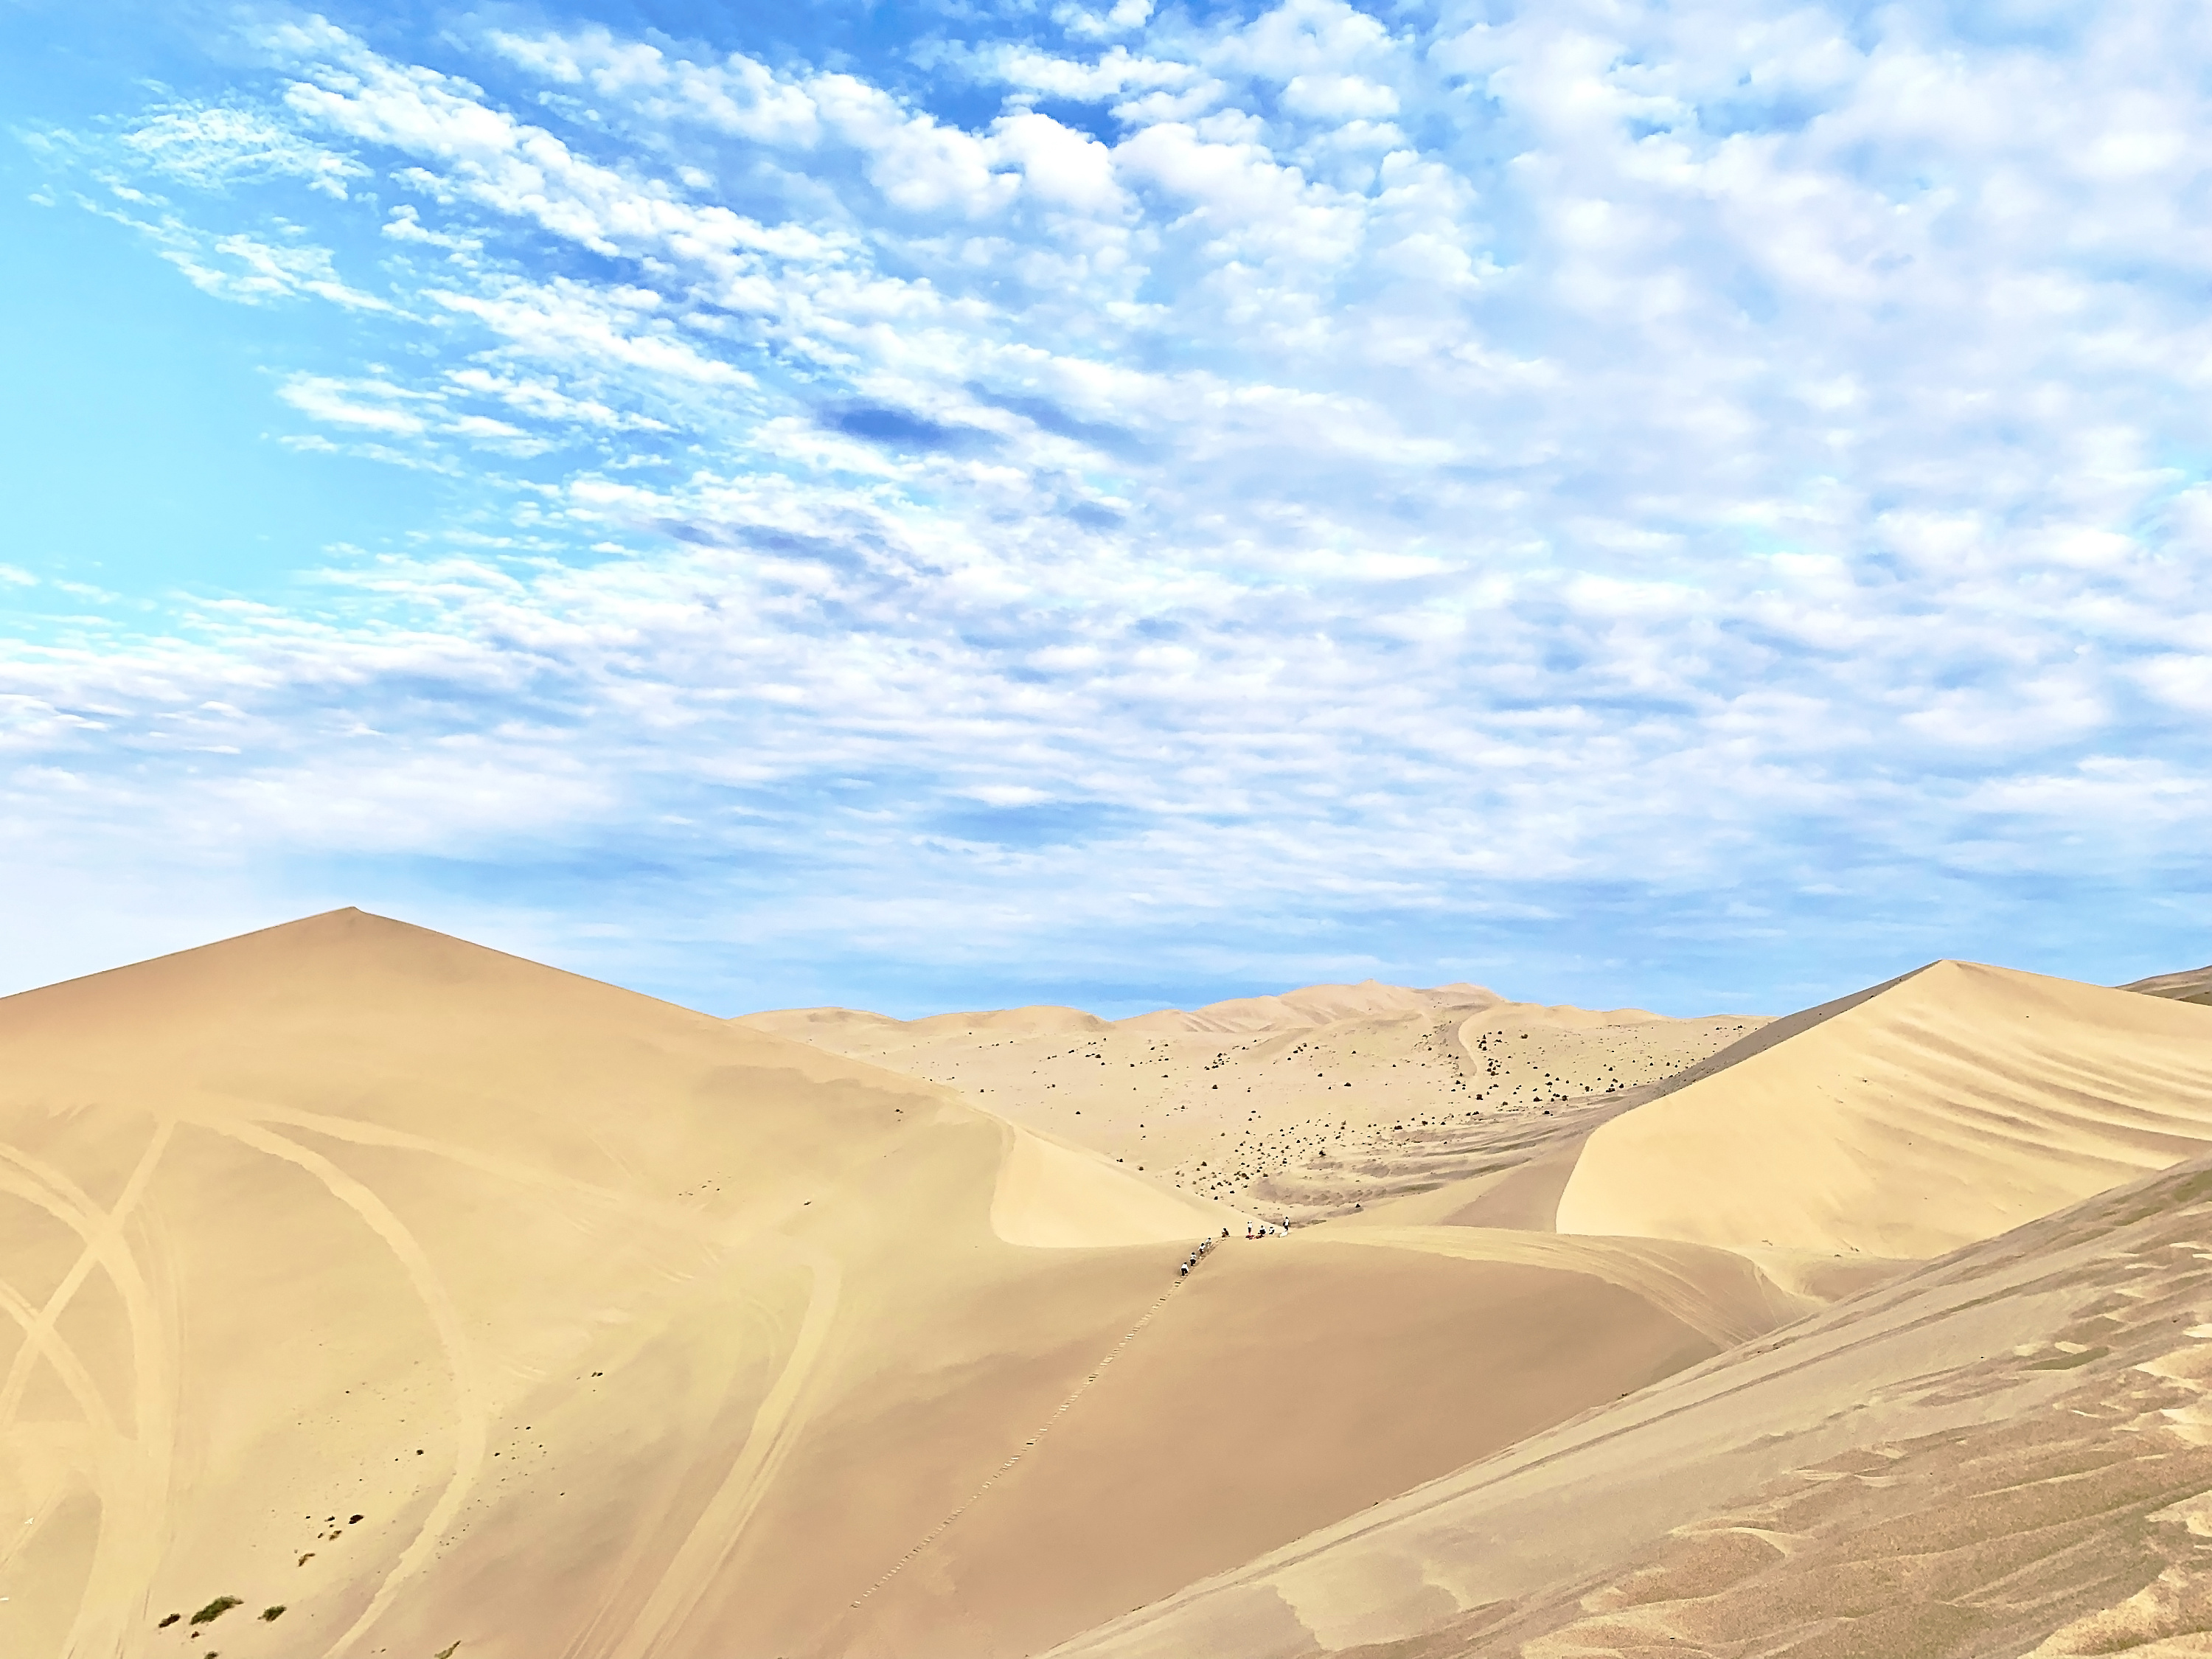 高清晰金色唯美沙漠沙丘美景壁纸